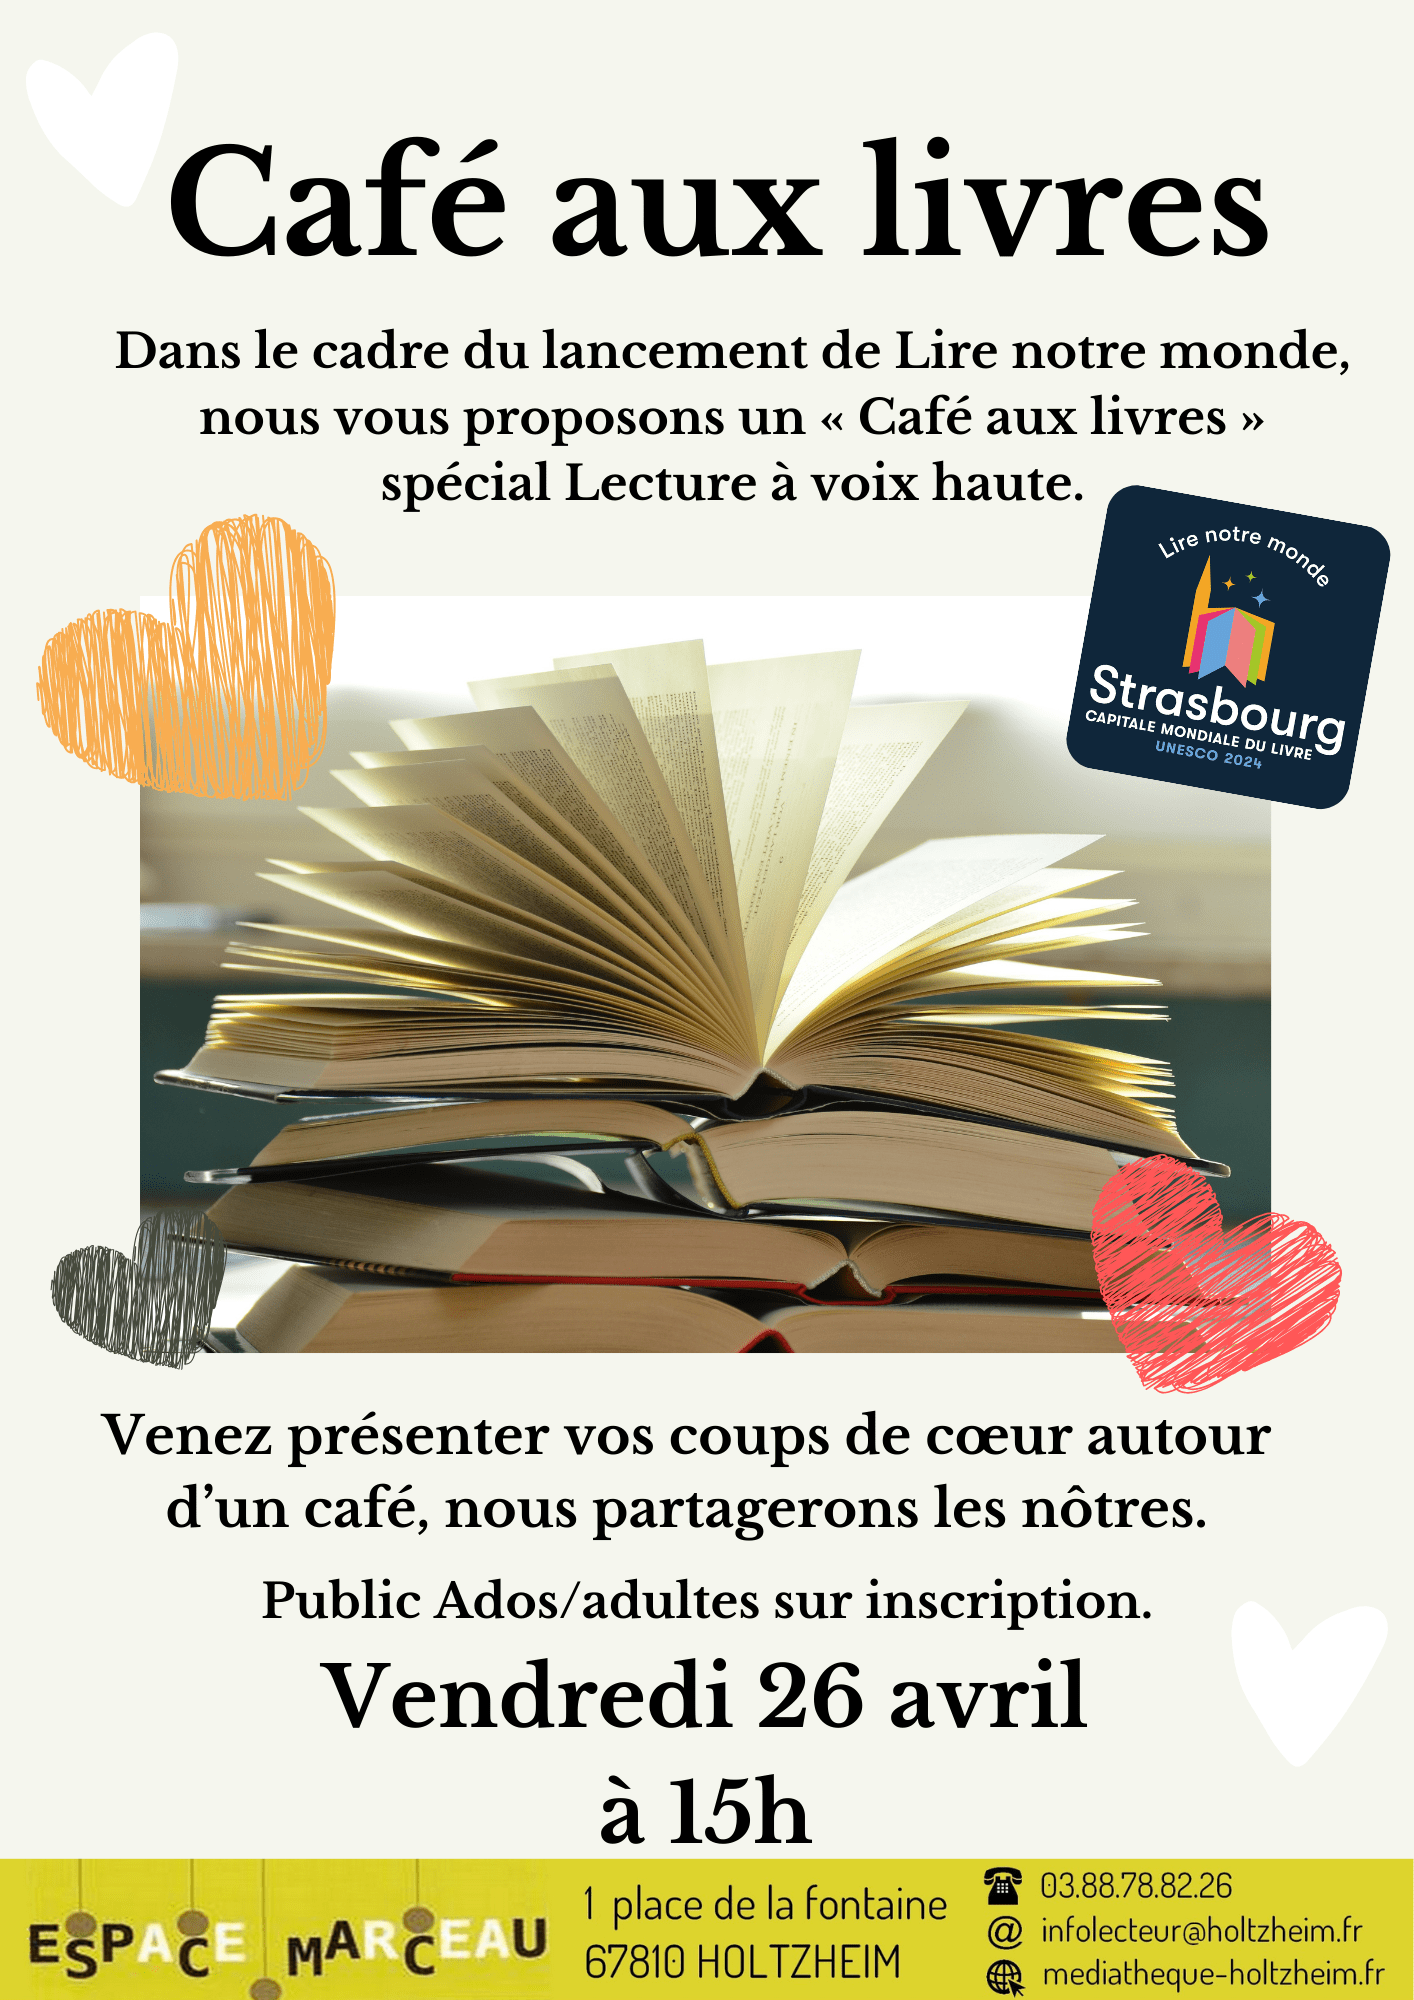 Affiche reprenant les informations sur le Café aux livres du vendredi 26 avril, avec une photographie de livre ouvert au centre entouré de cœurs de plusieurs couleurs, et un logo du festival Lire Notre Monde